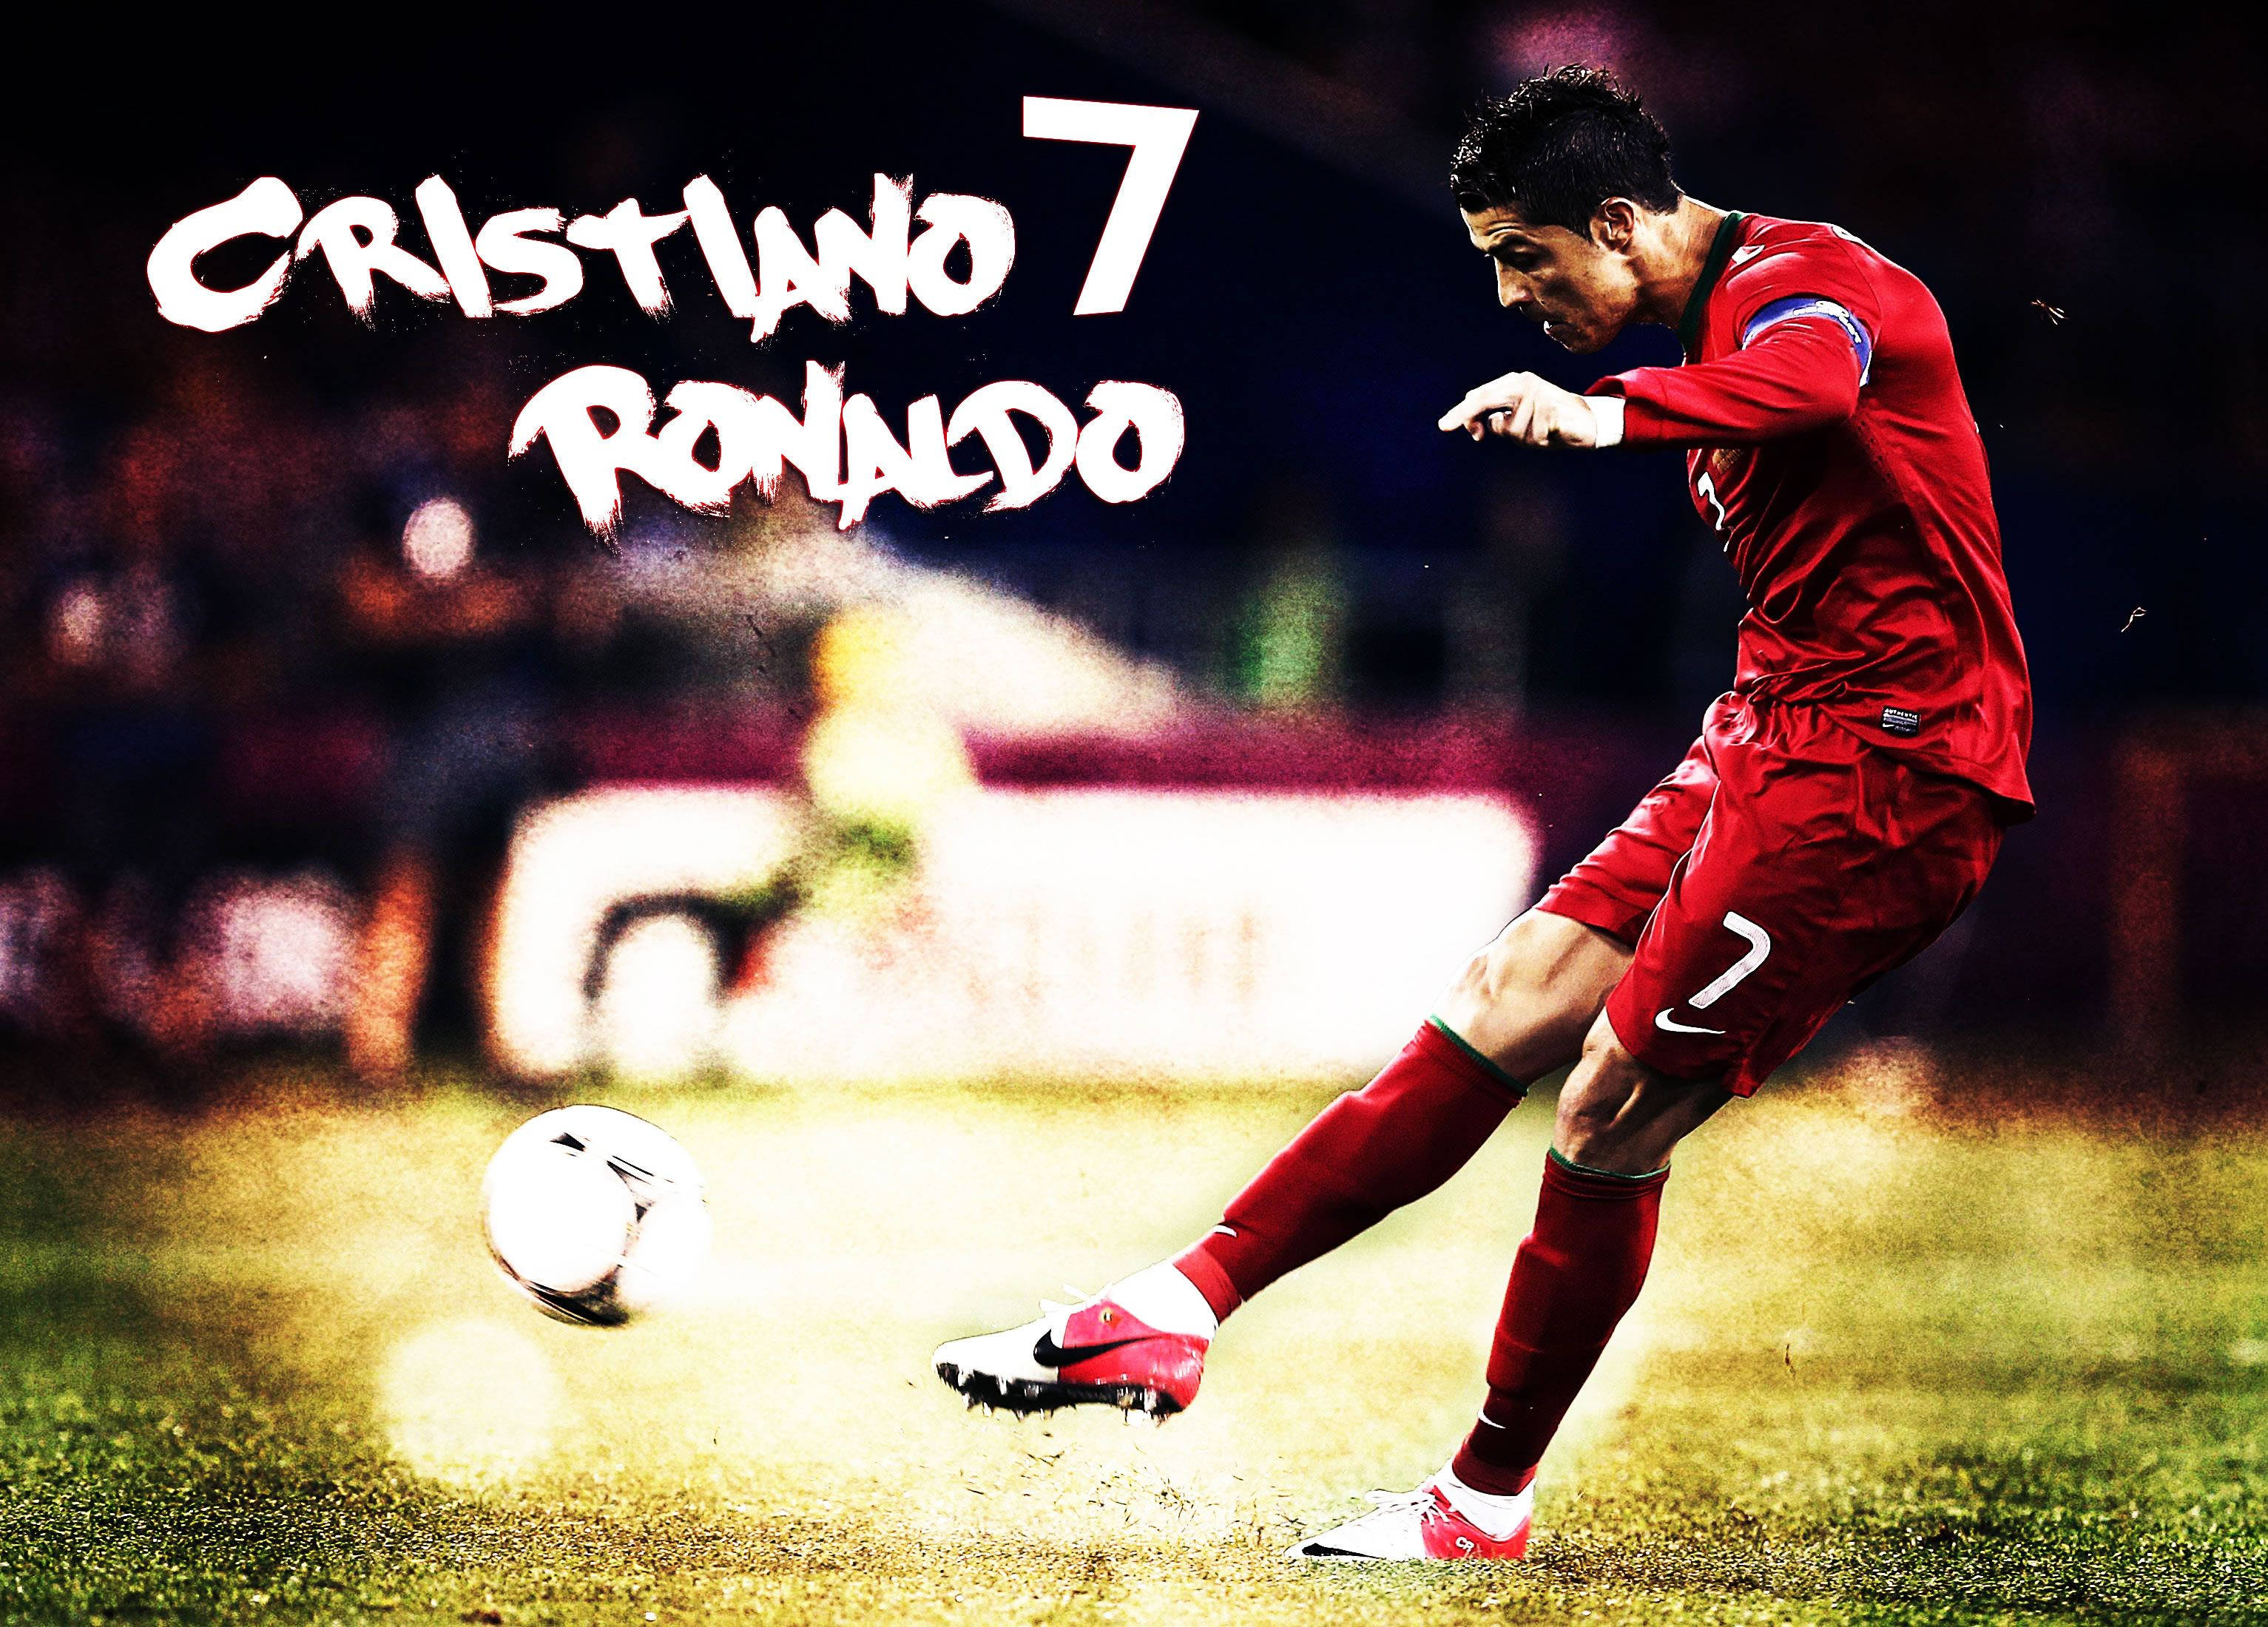 Cristiano Ronaldo Cool Mid Kick Graphic Art Wallpaper